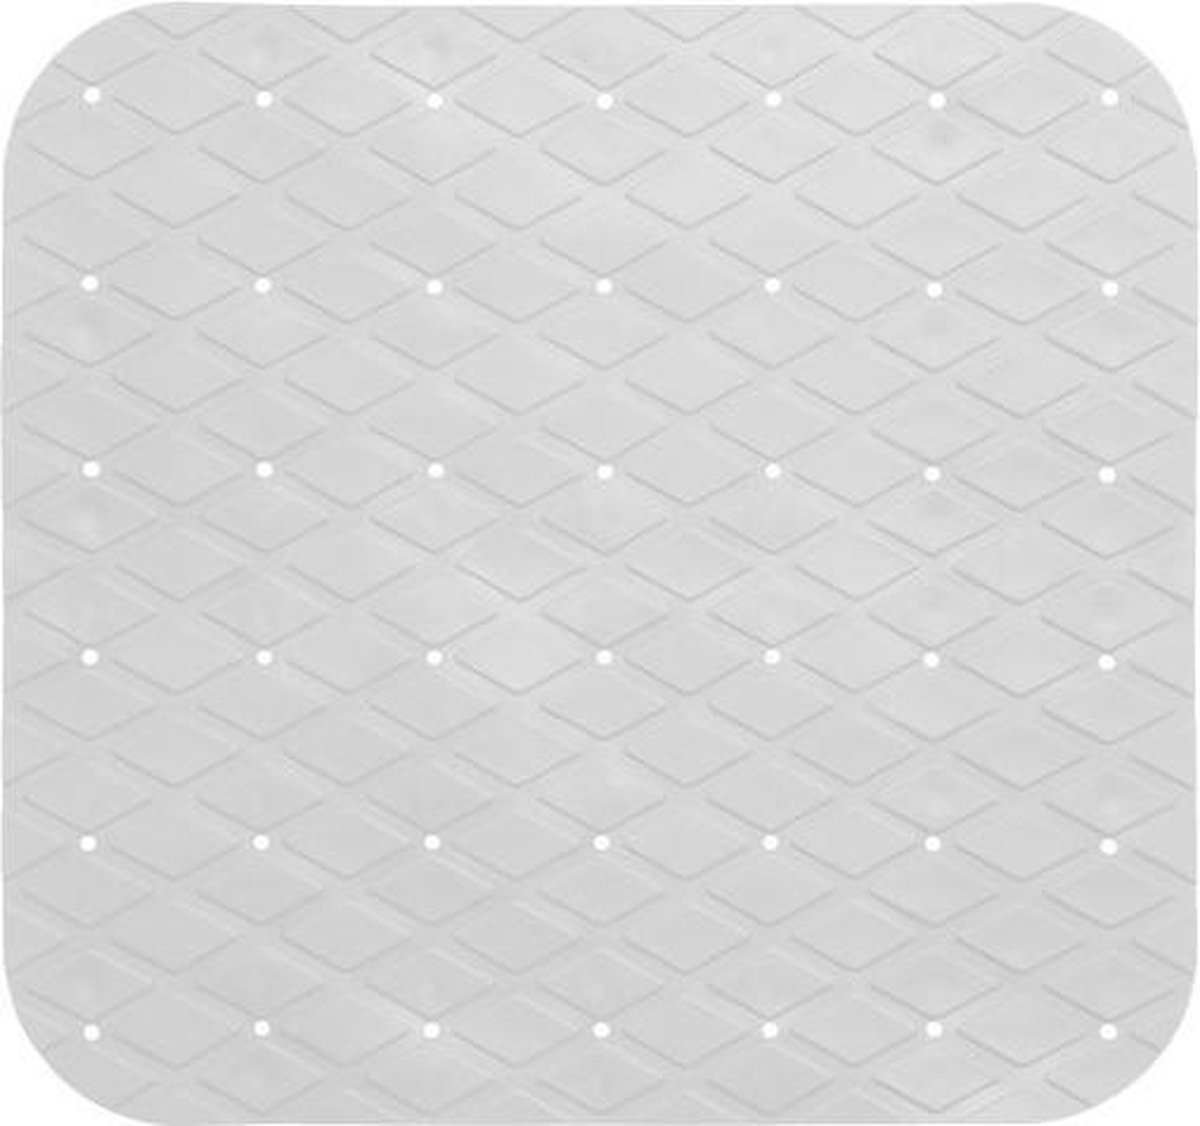 Douchemat met zuignappen wit - 50x50 CM - Badmat antislip - Douche Antislipmat rubber - Badkamer mat voor kinderen